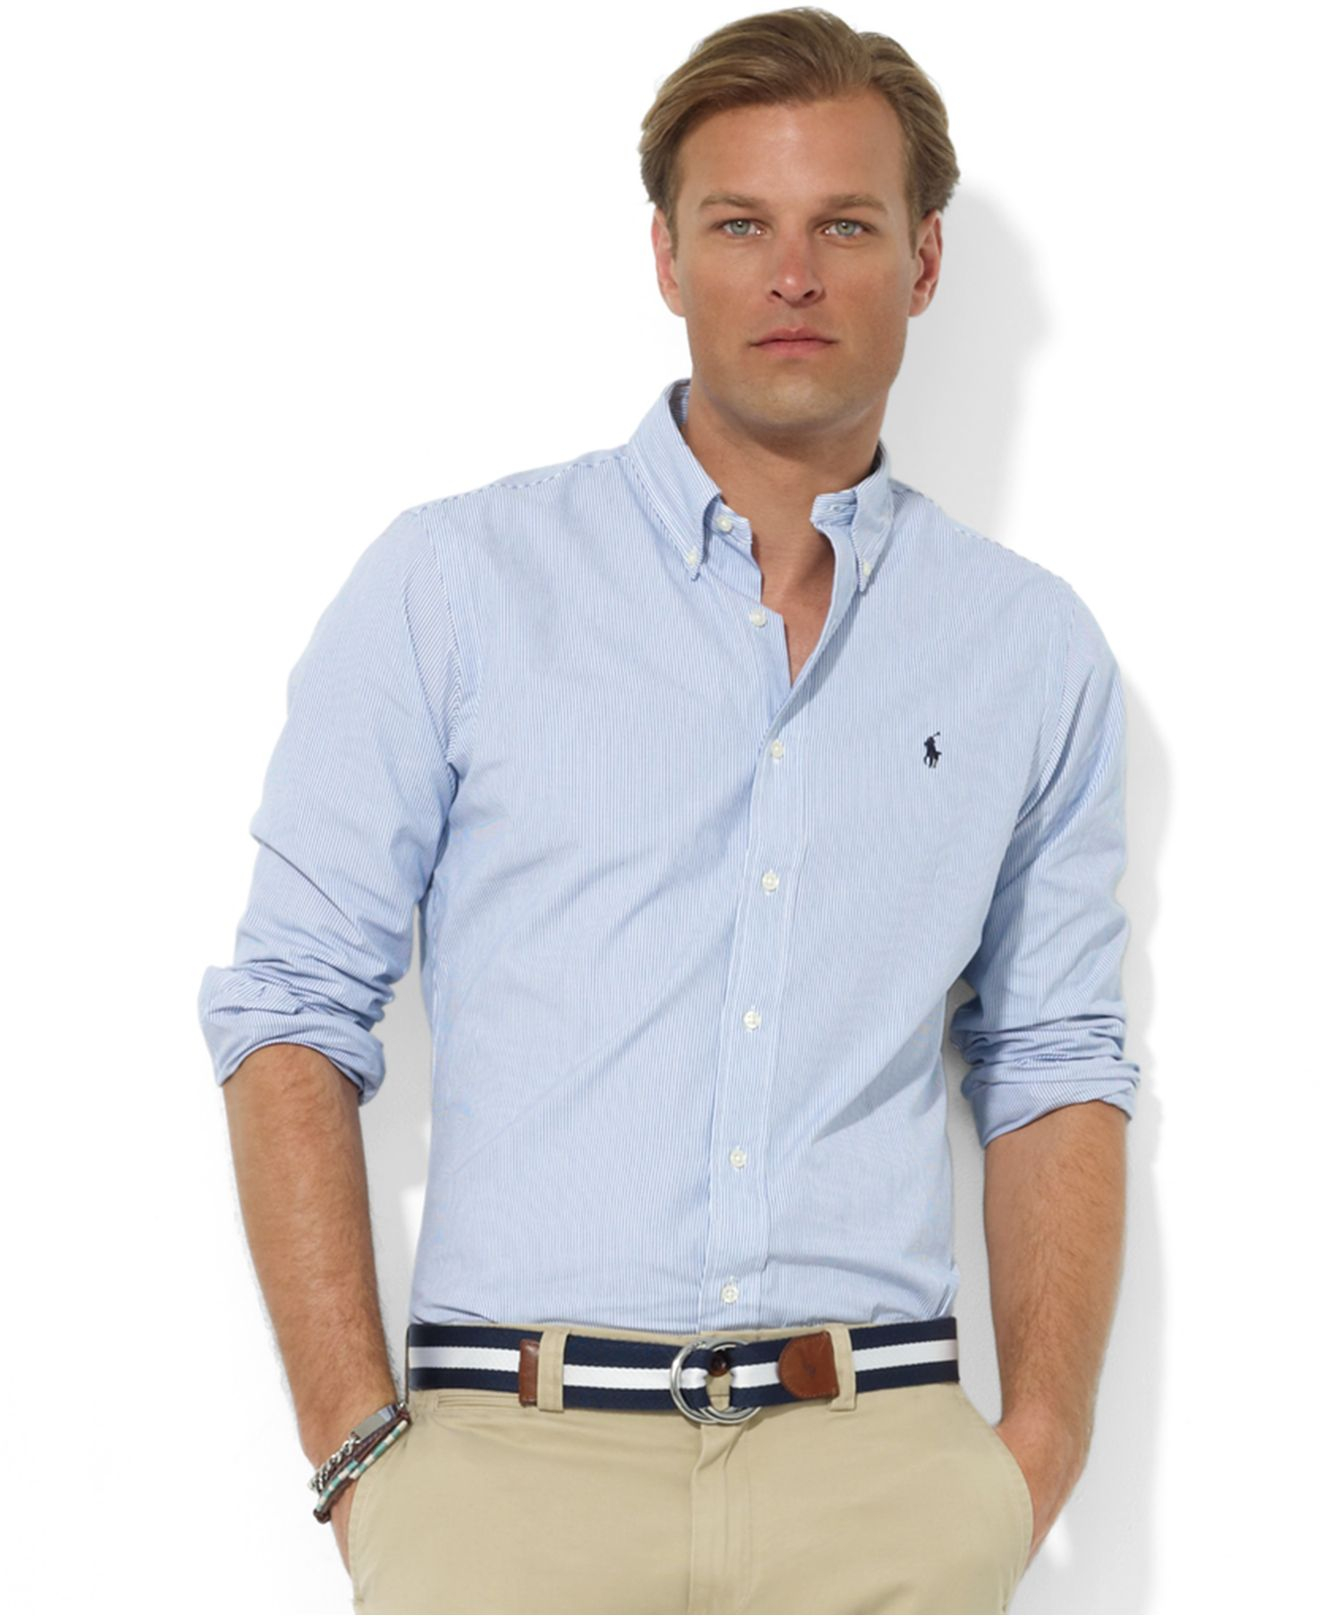 Lyst - Polo Ralph Lauren Core Custom Fit Broadcloath Dress Shirt in ...